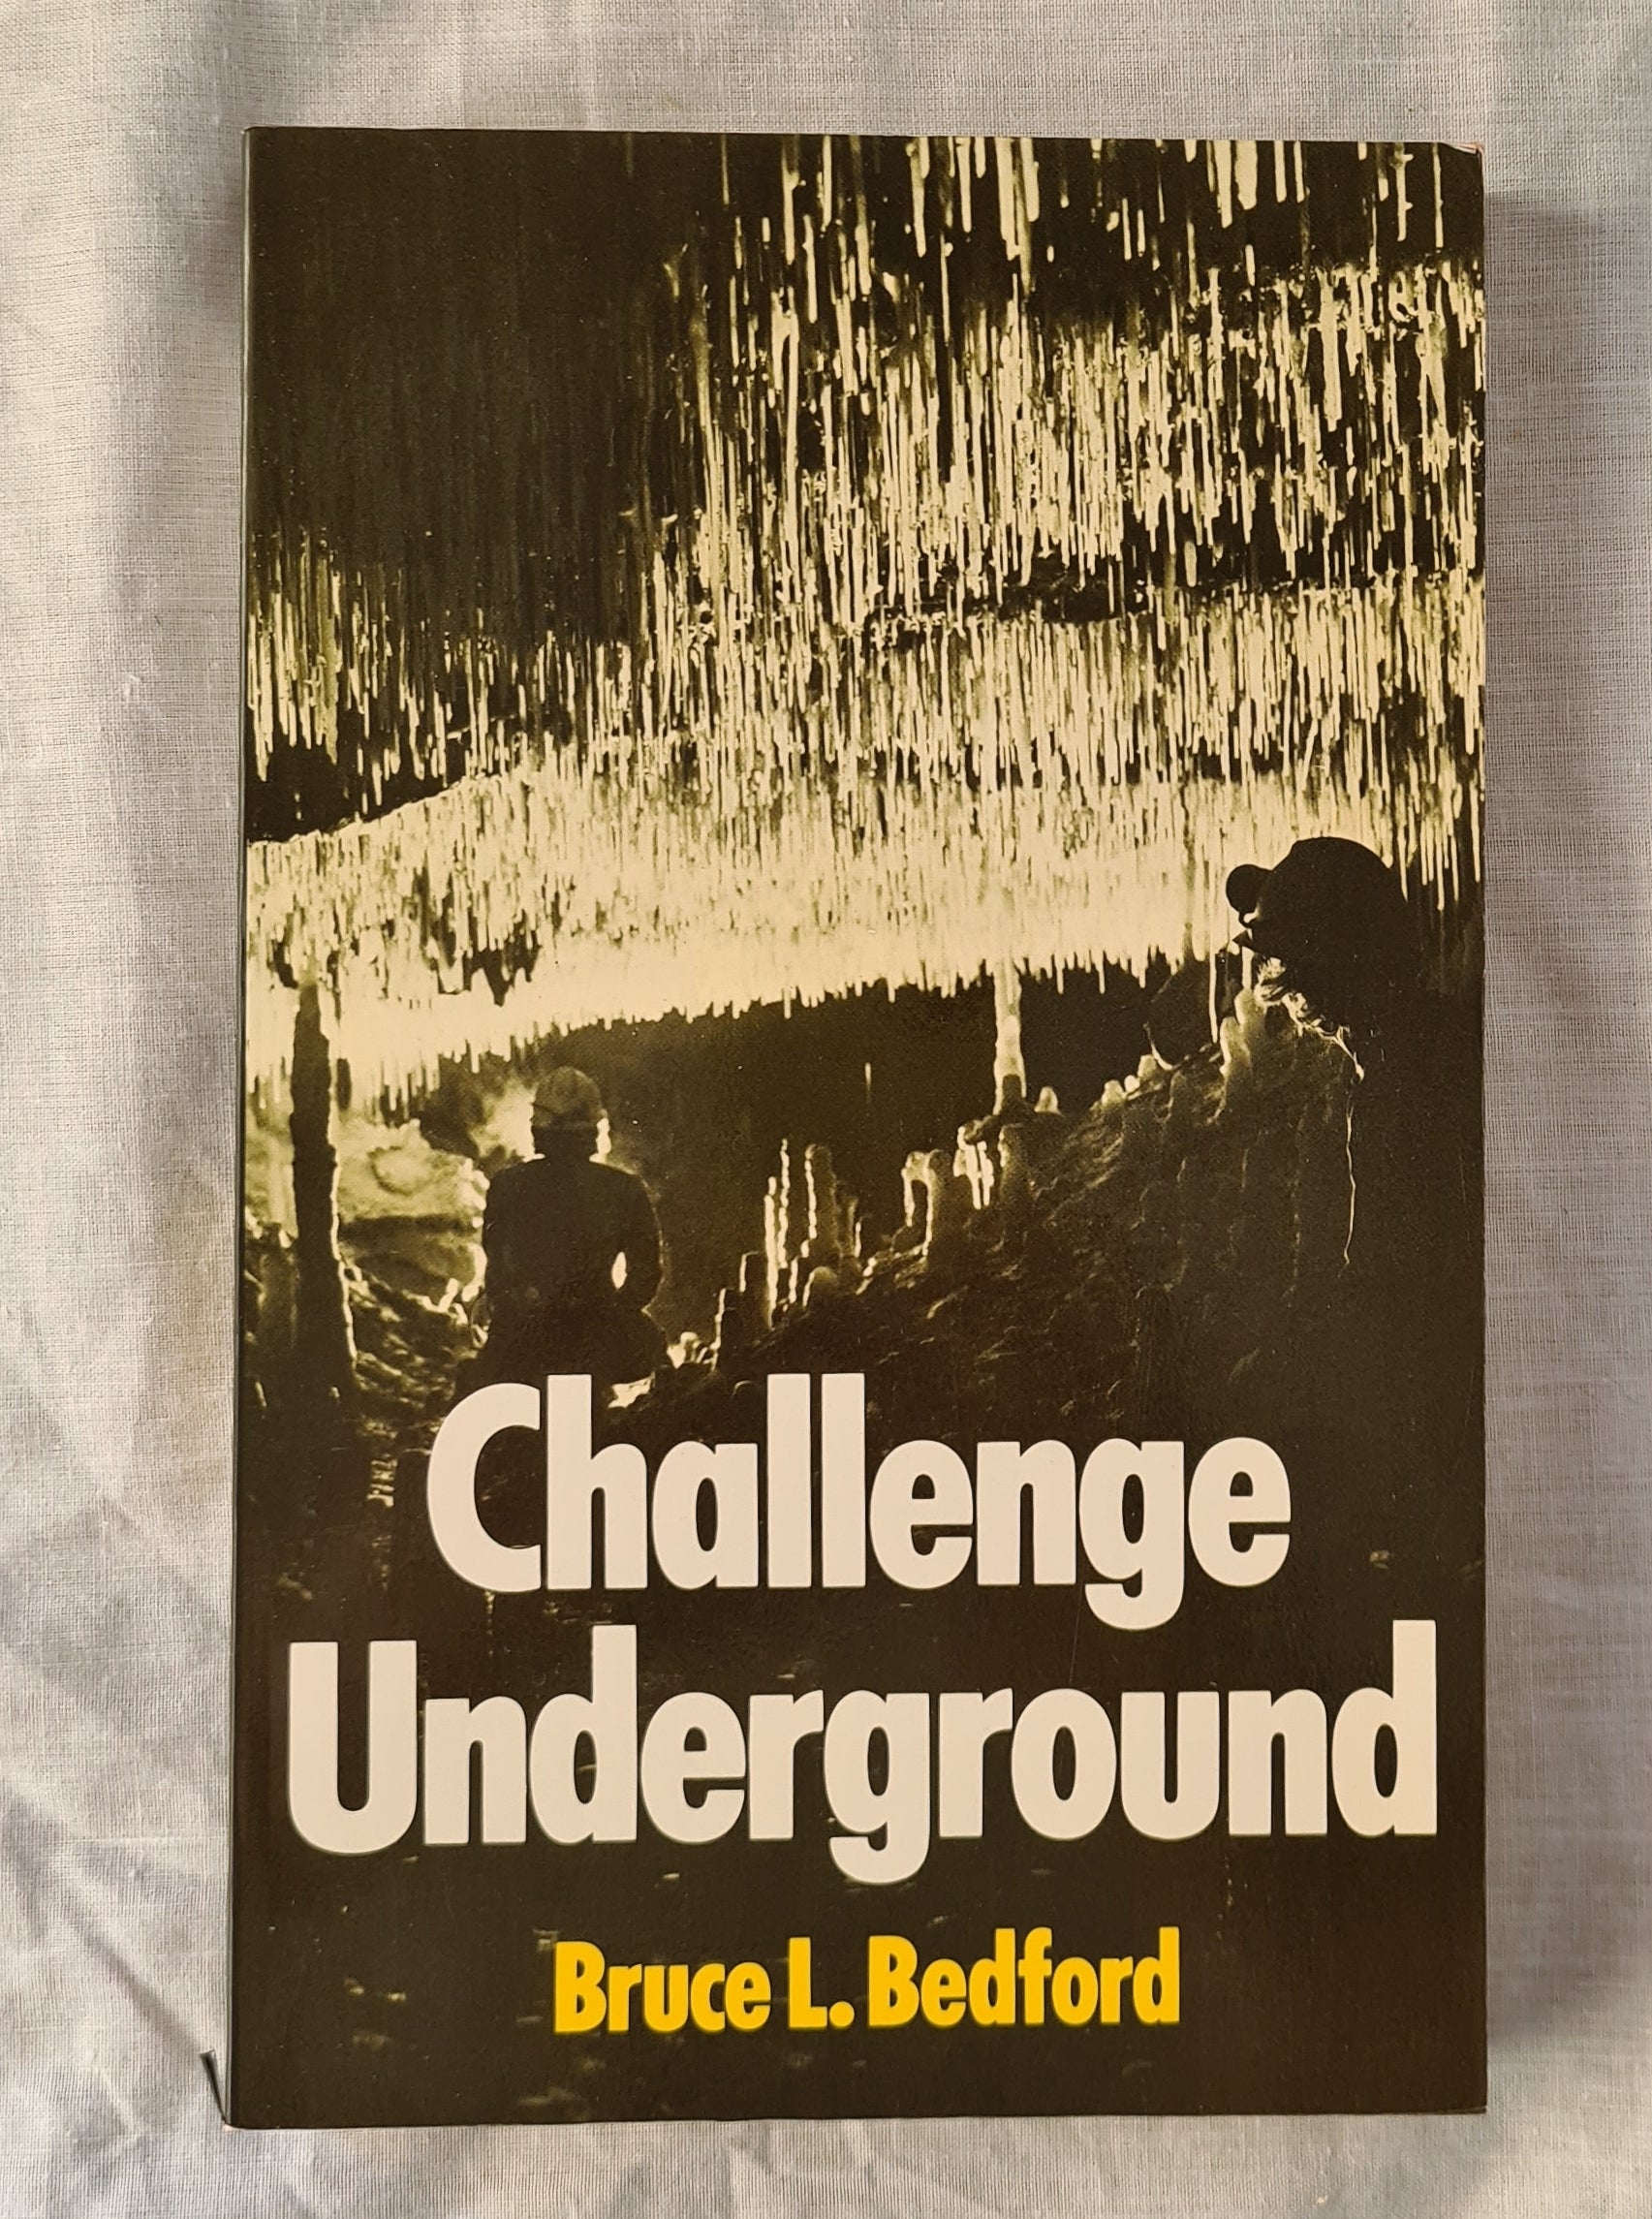 Challenge Underground  by Bruce L. Bedford